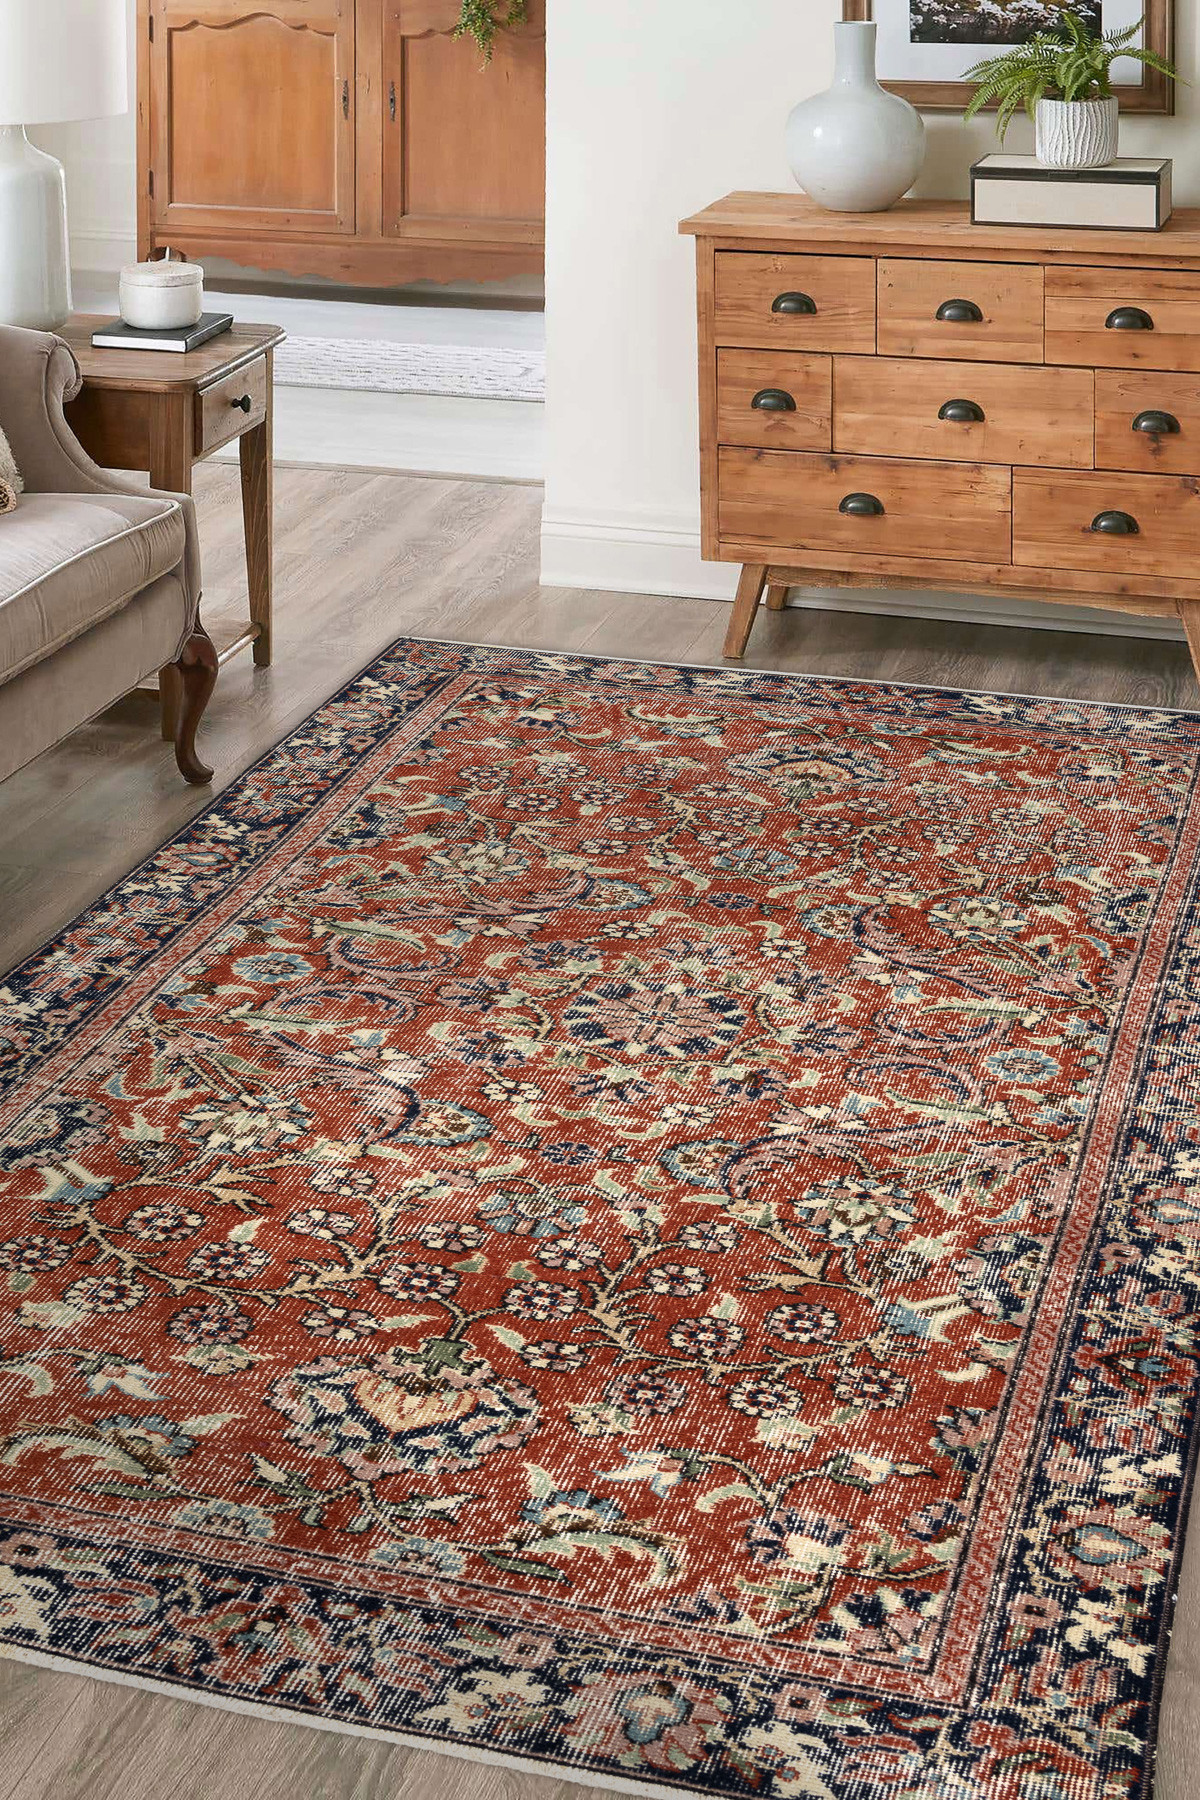 Ručne tkaný vlnený koberec Vintage 10181 rám / kvety, tehlový / zelený